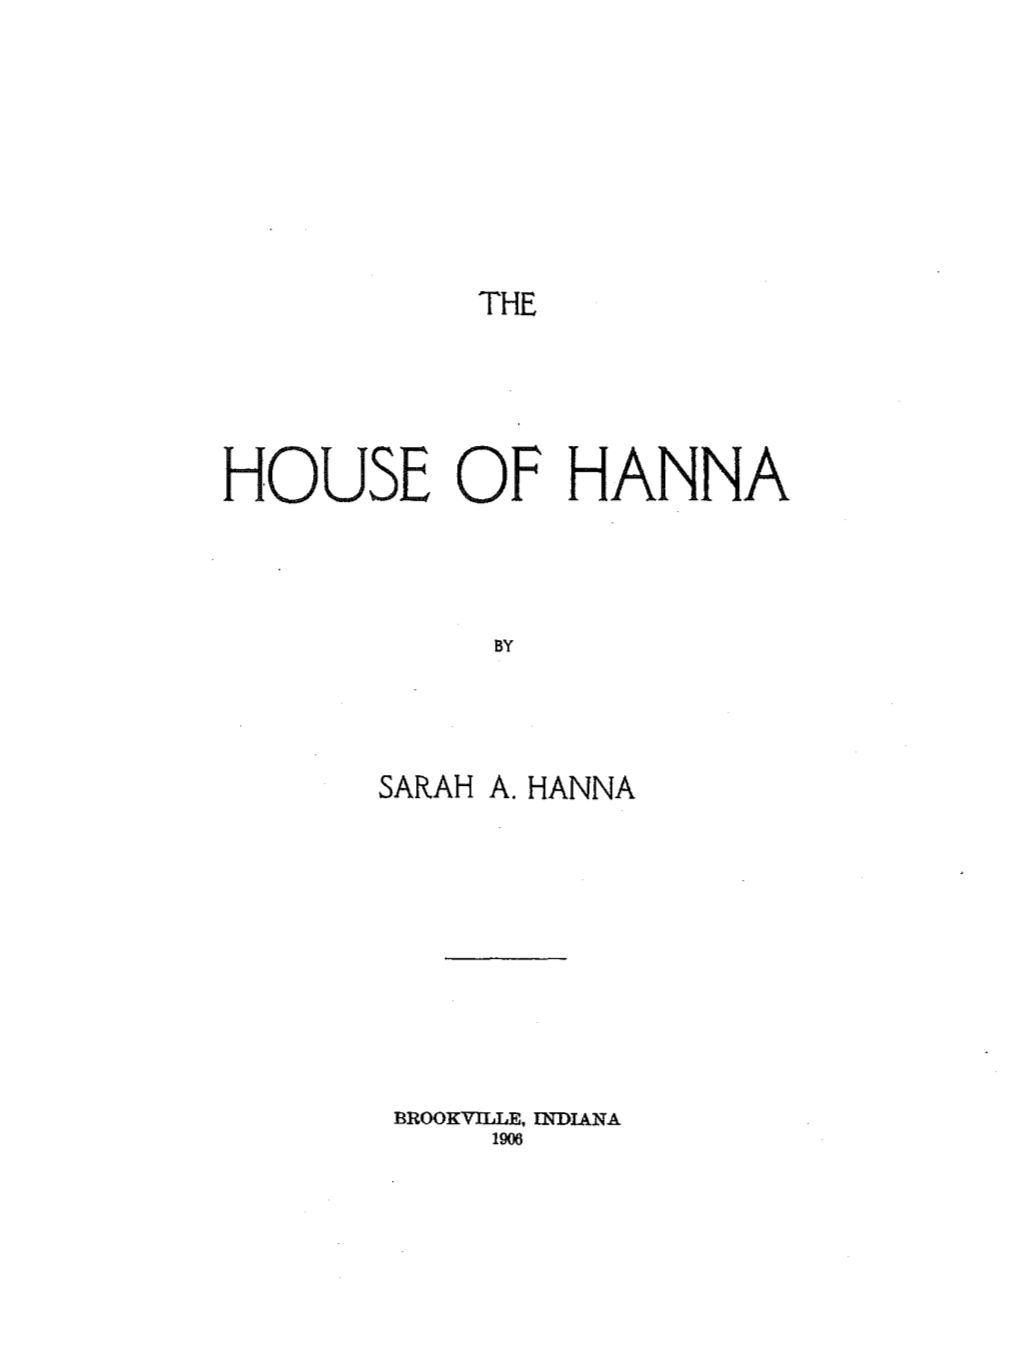 House of Hanna